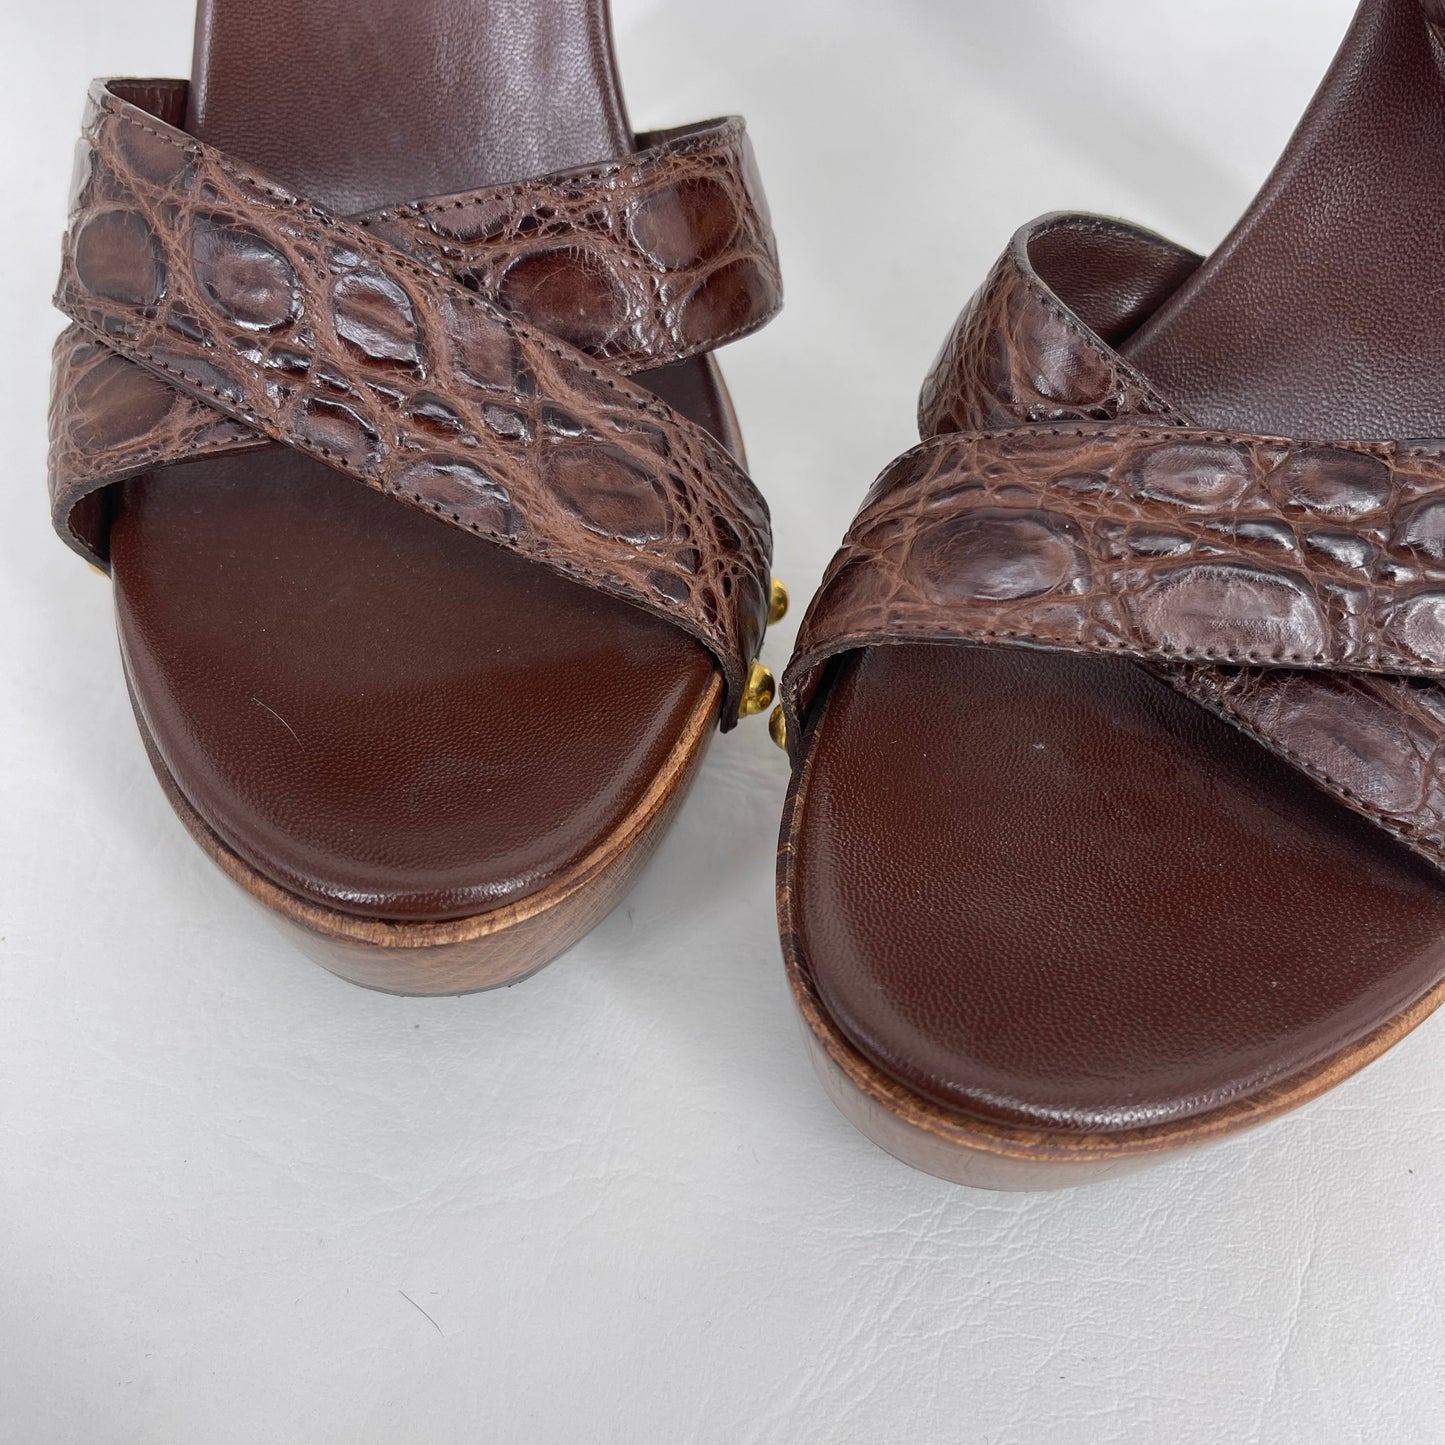 Authentic Gucci Brown Croc Wood Clog Heels Sz 8.5